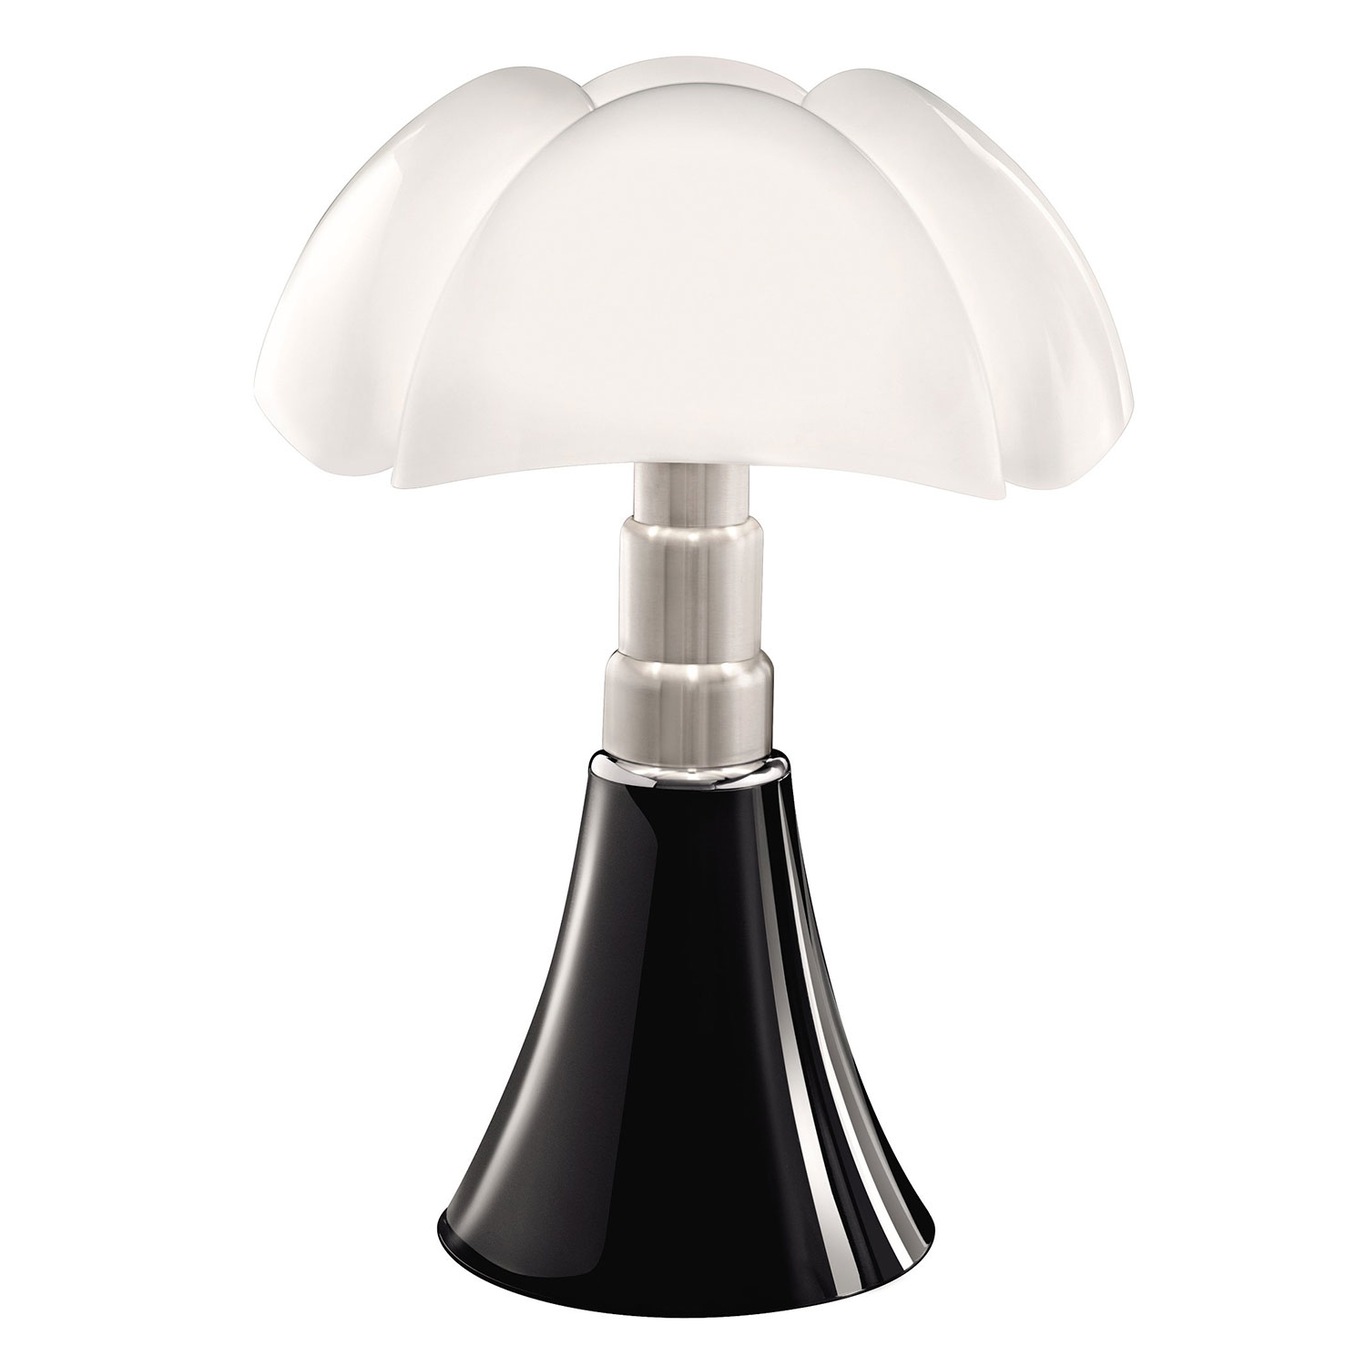 Pipistrello Large Table Lamp, Black